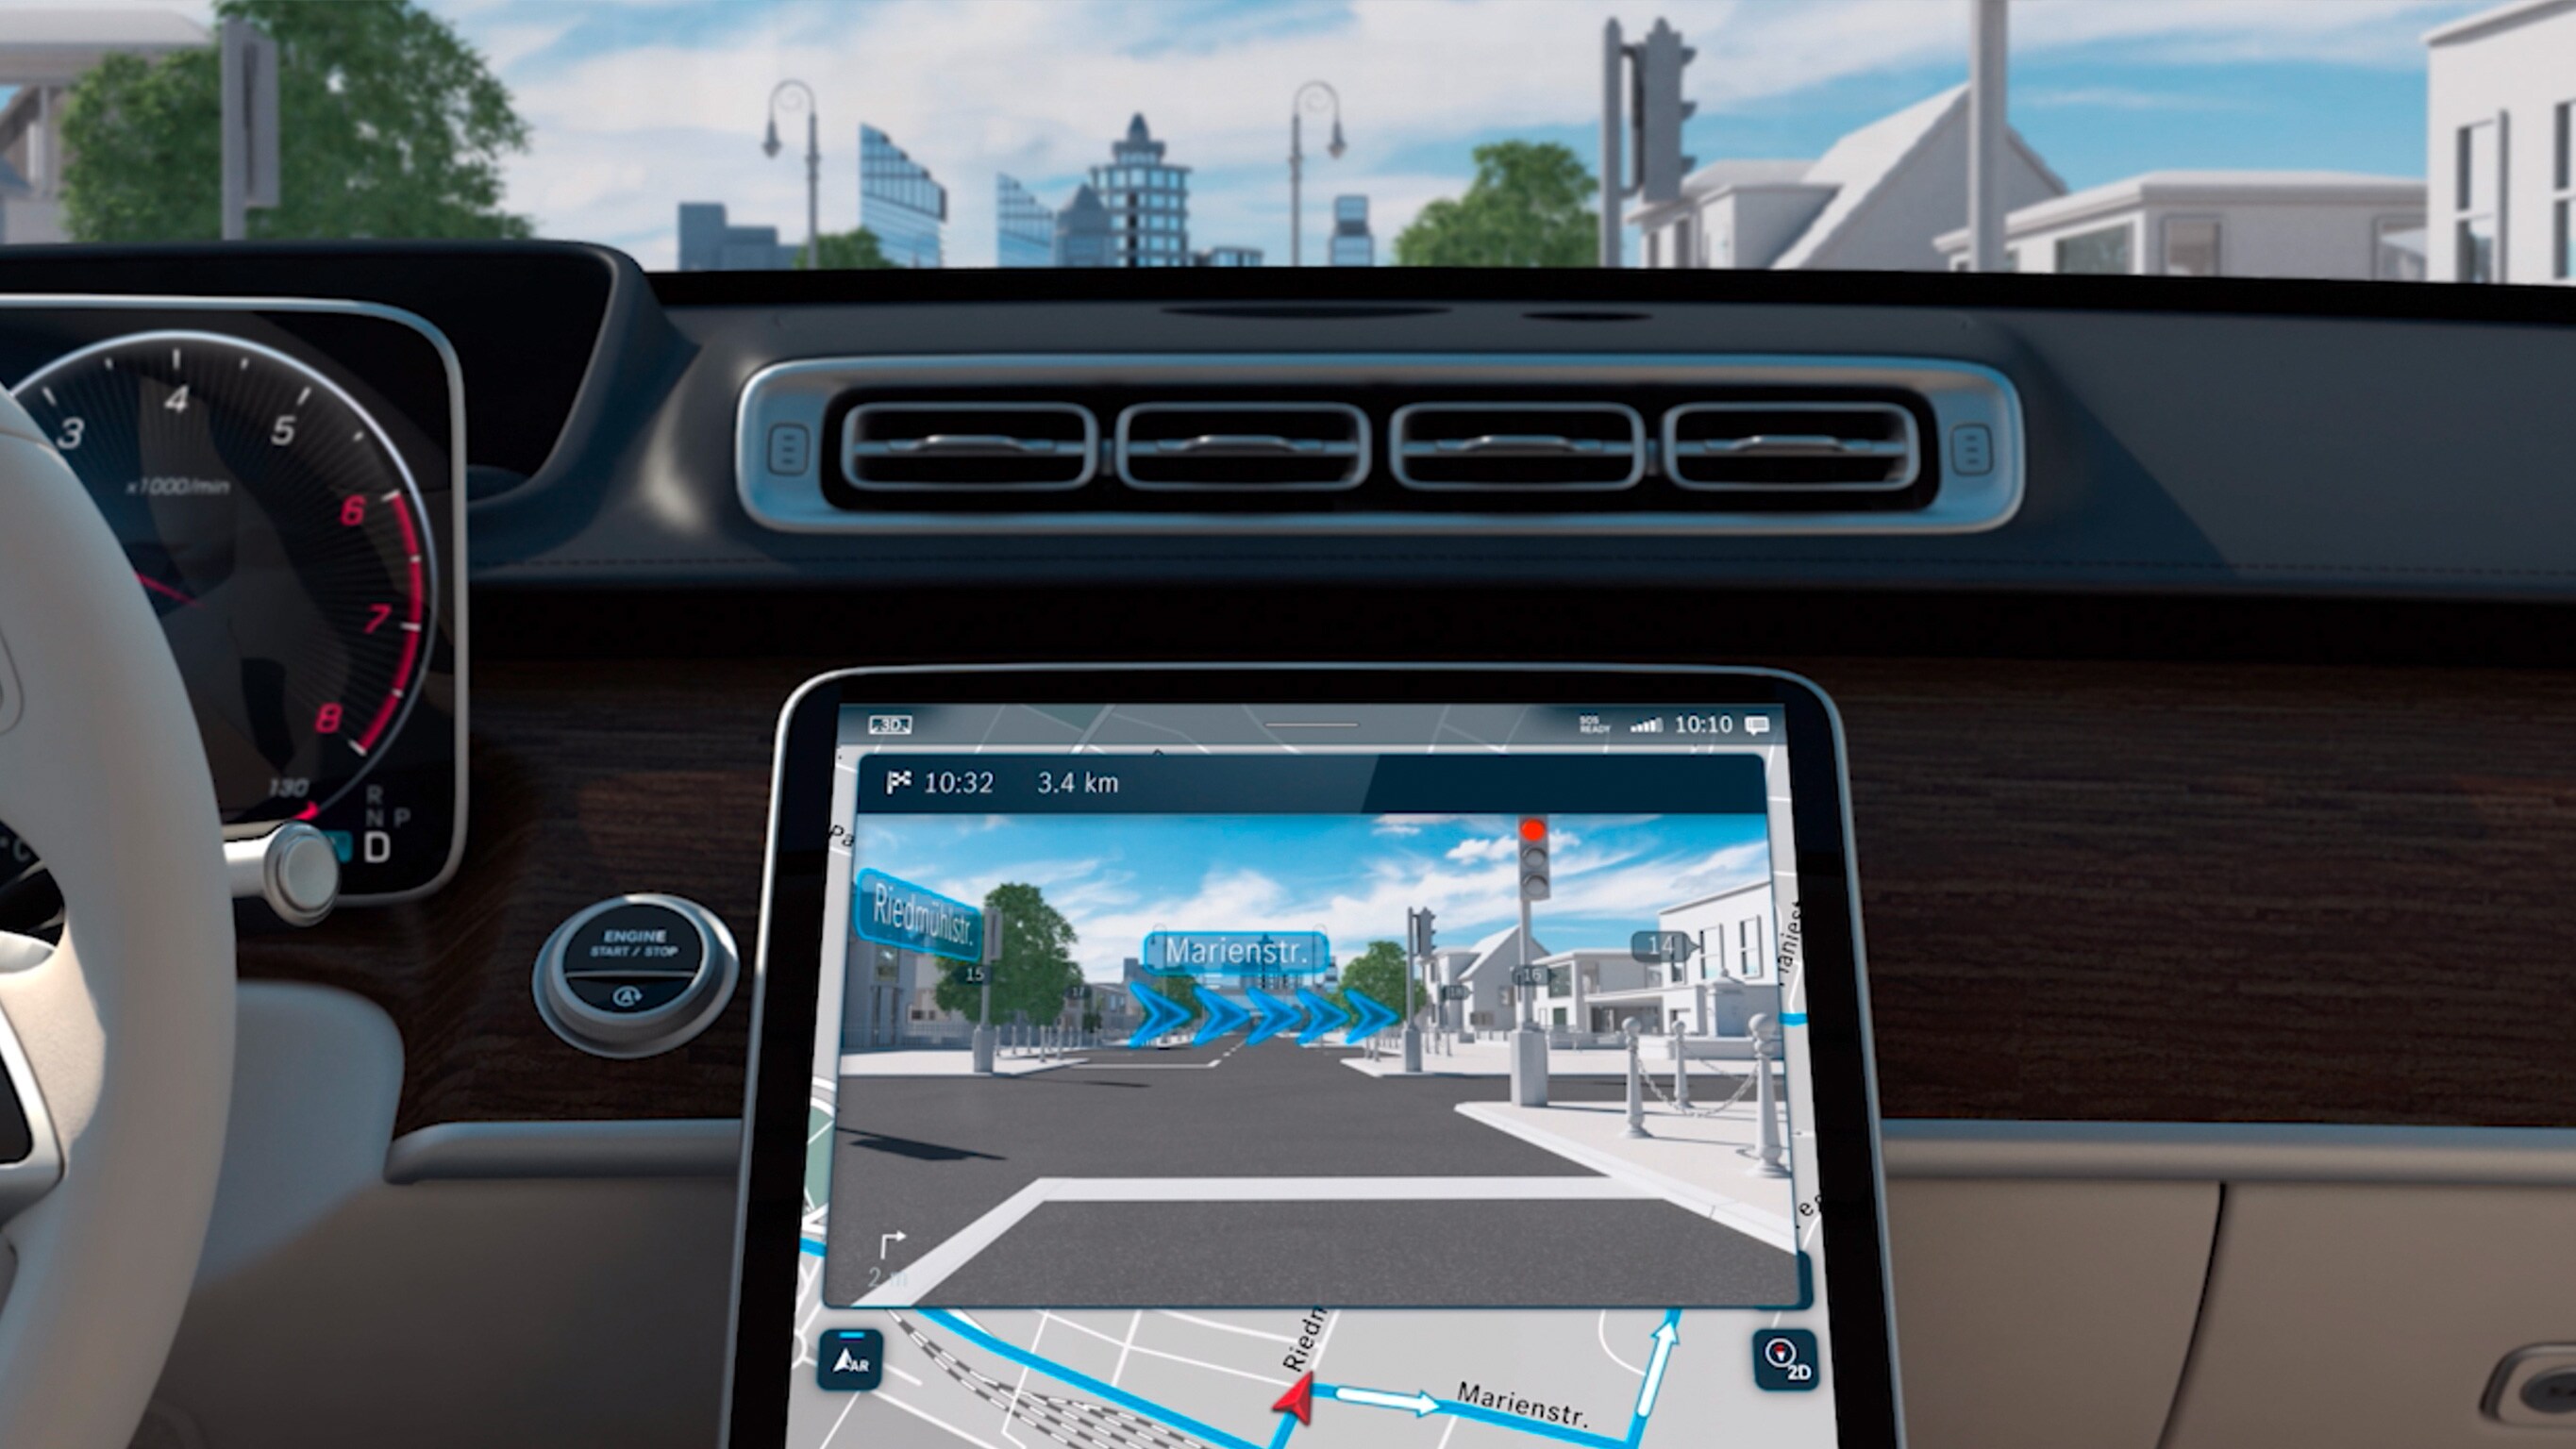 Videoclipul prezintă realitatea augmentată MBUX pentru sistemul de navigație.